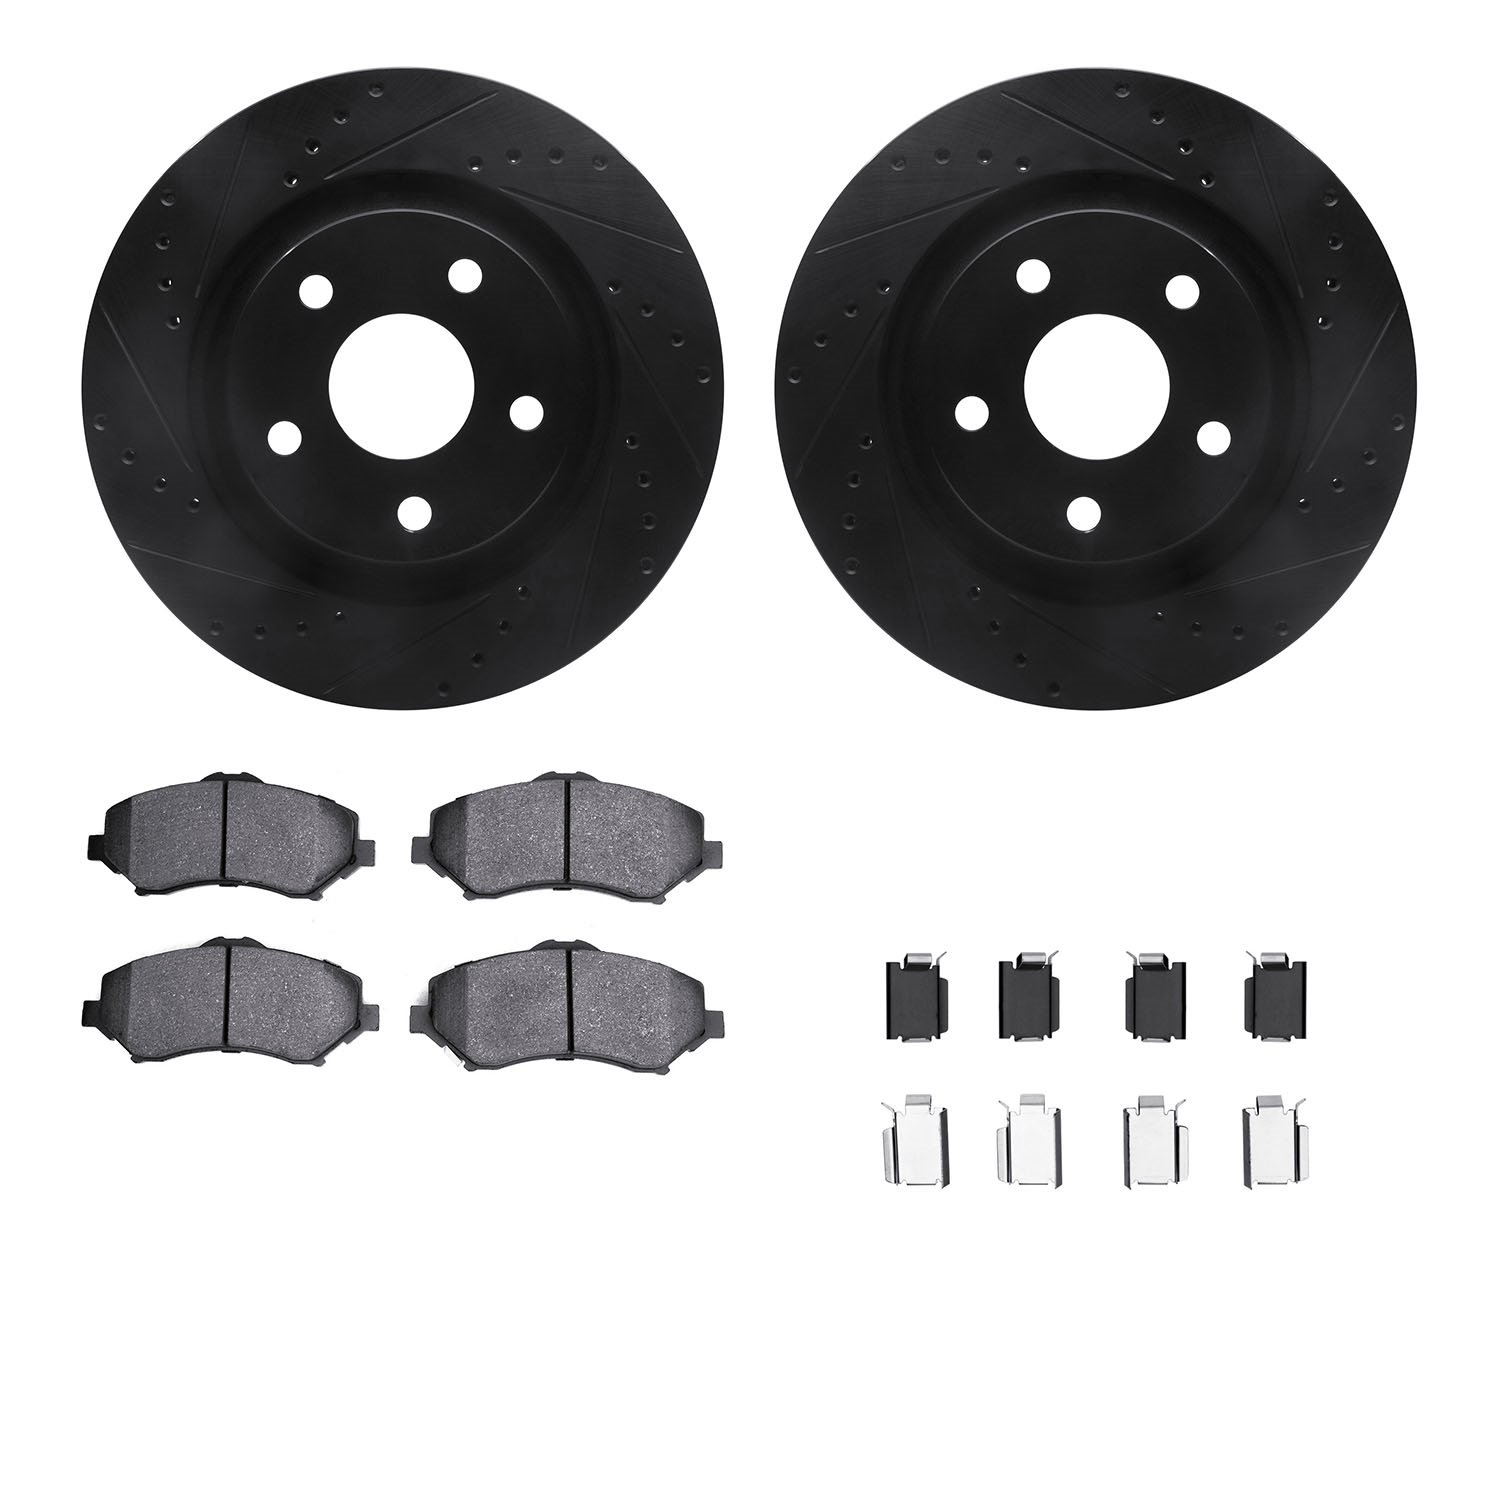 8512-42033 Drilled/Slotted Brake Rotors w/5000 Advanced Brake Pads Kit & Hardware [Black], 2012-2018 Mopar, Position: Front